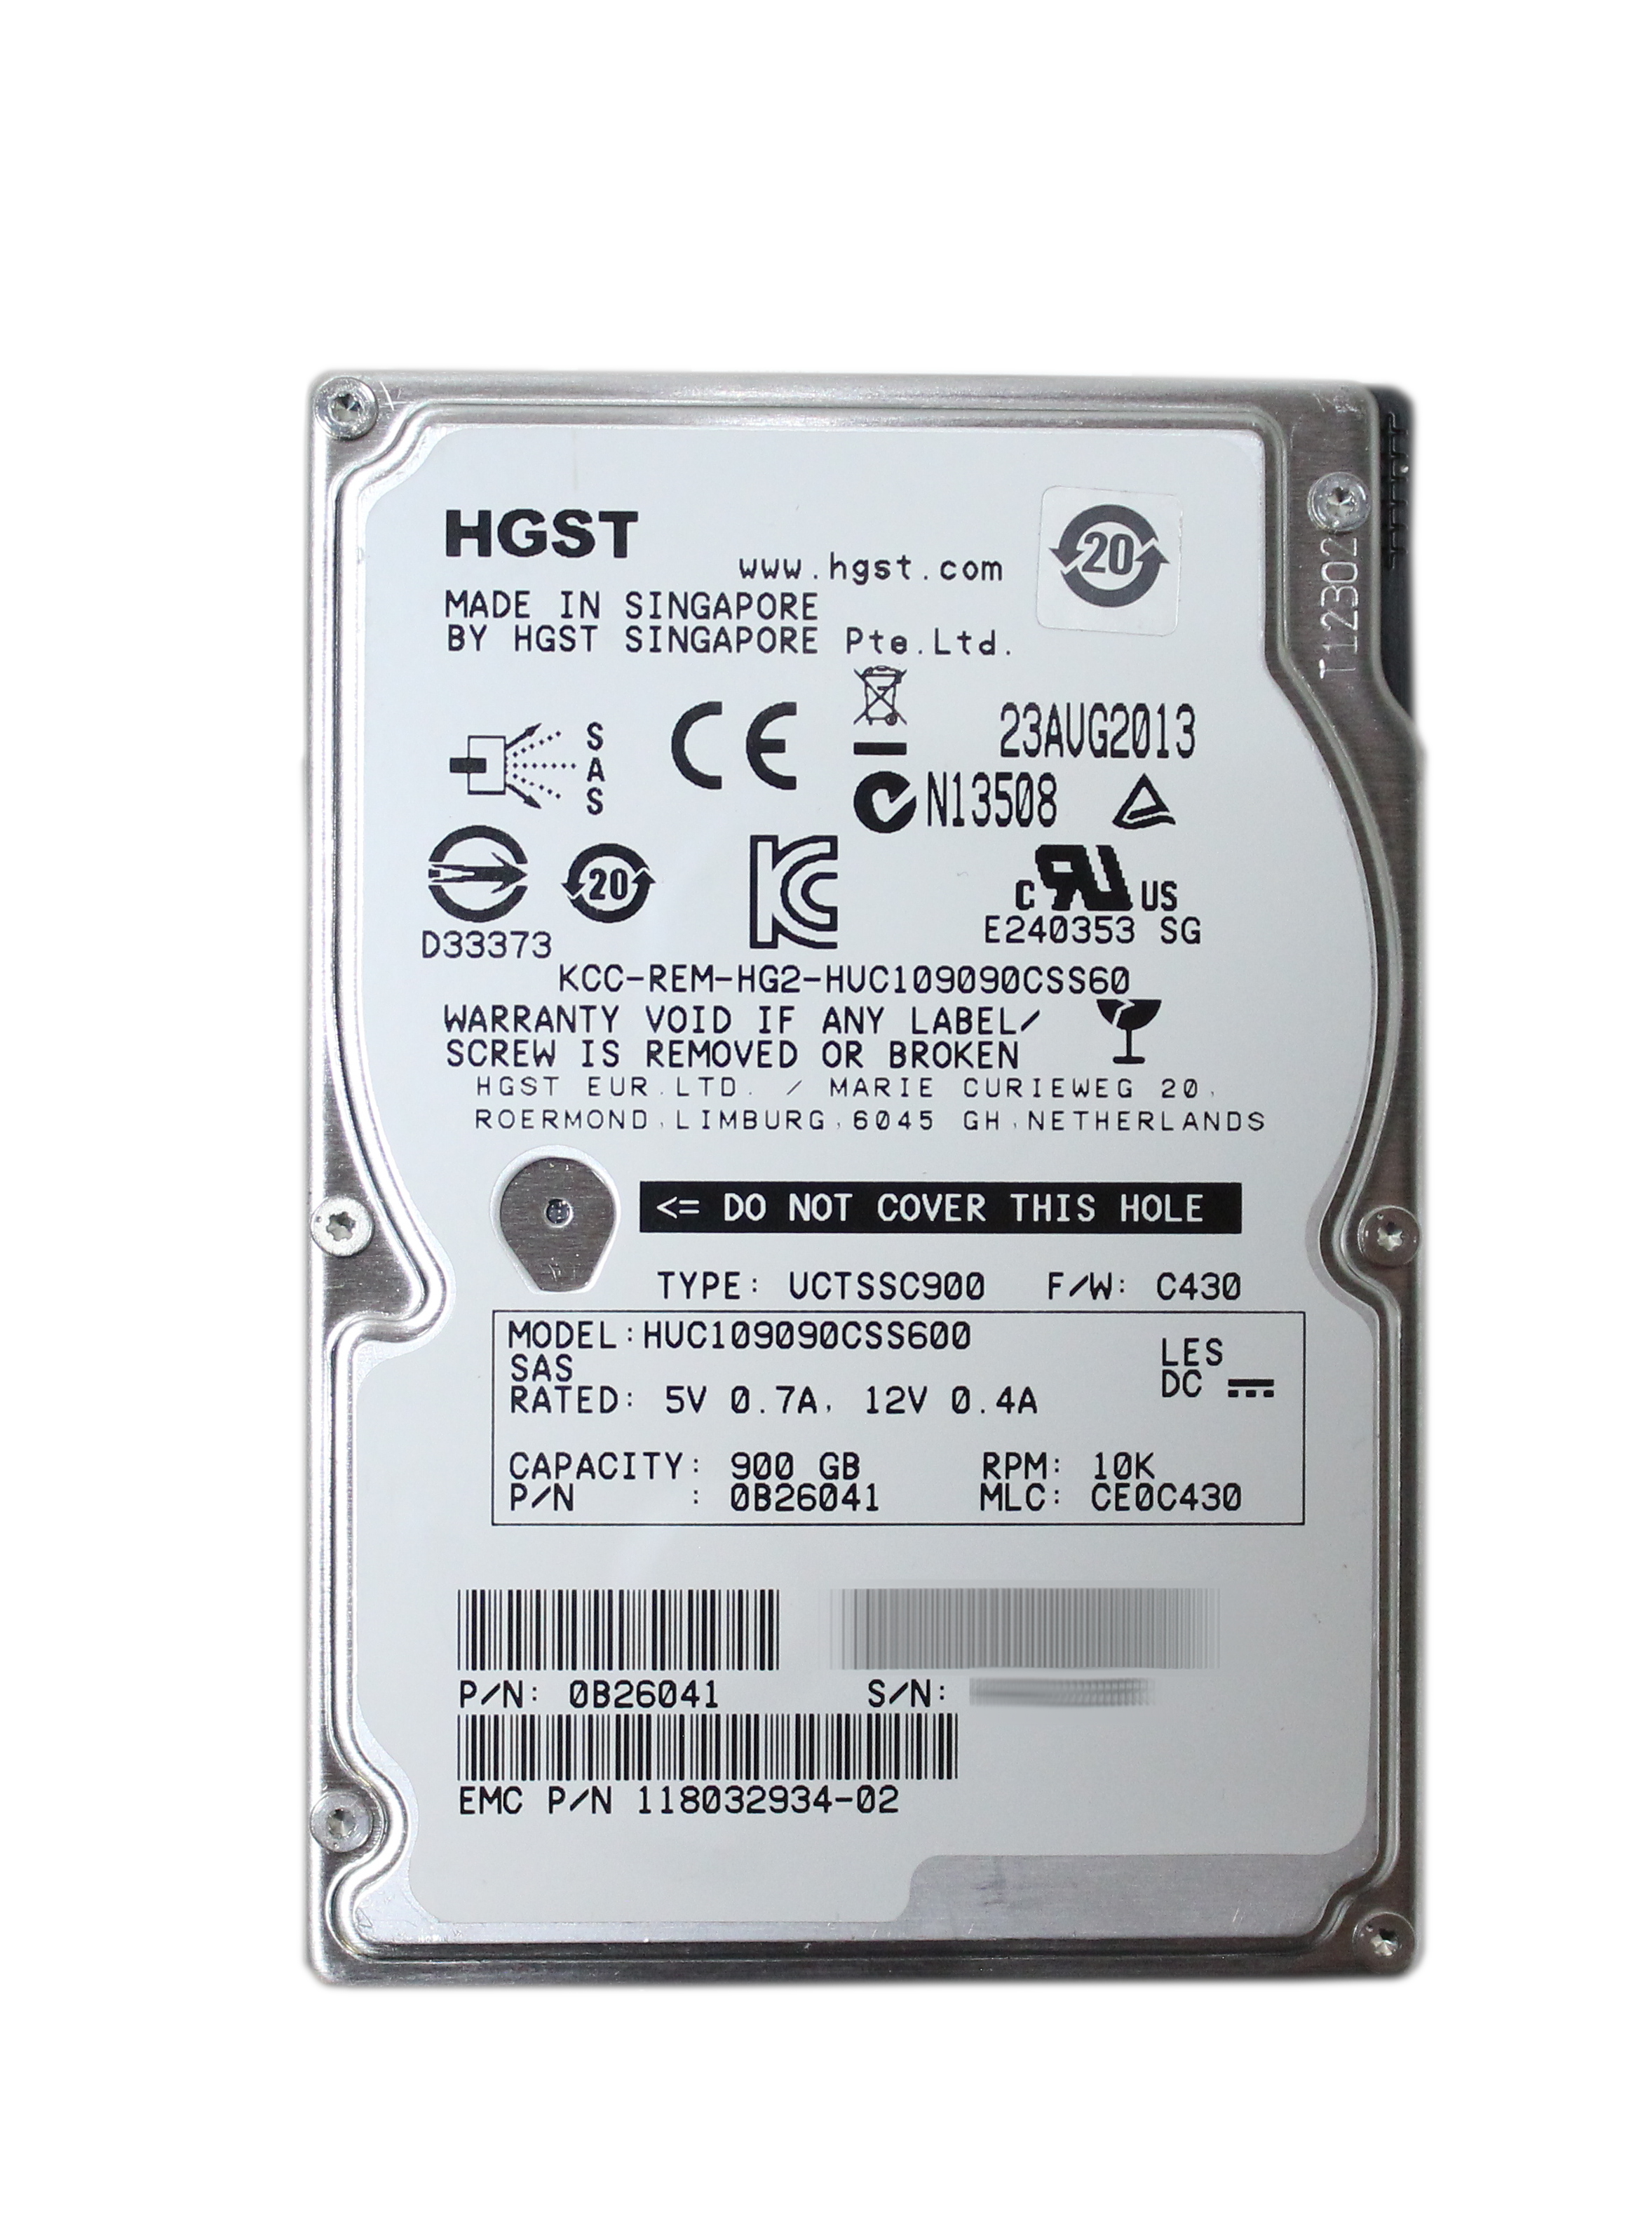 HGST 900GB HUC109090CSS600 RPM 10K 2.5" SAS EMC 0B26041 118032934-02 V6-2S10-900-DUP - Click Image to Close